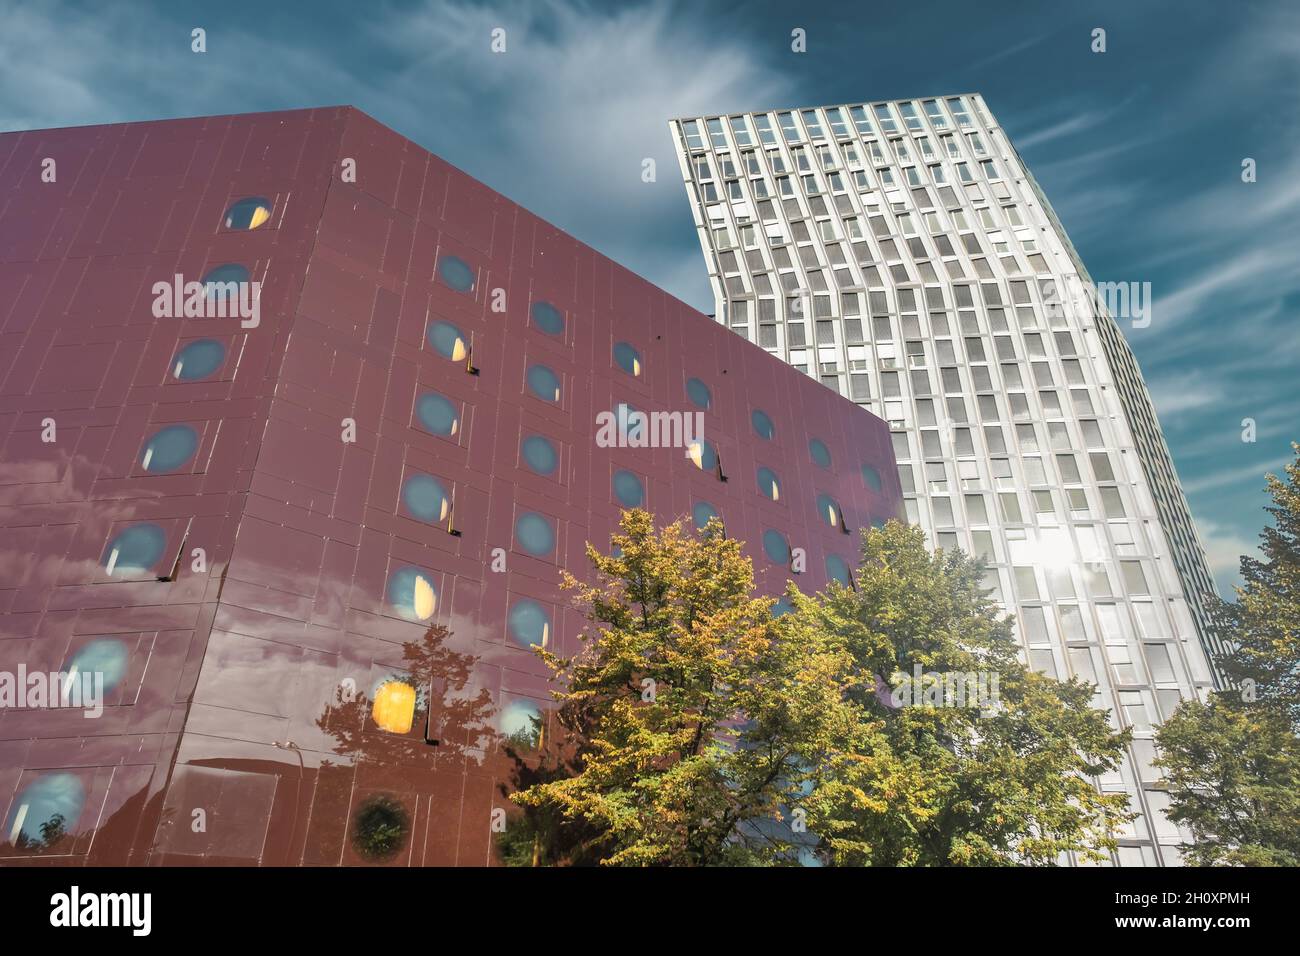 Complexe de tours dansantes sur Reeperbahn à Hambourg, Allemagne Banque D'Images